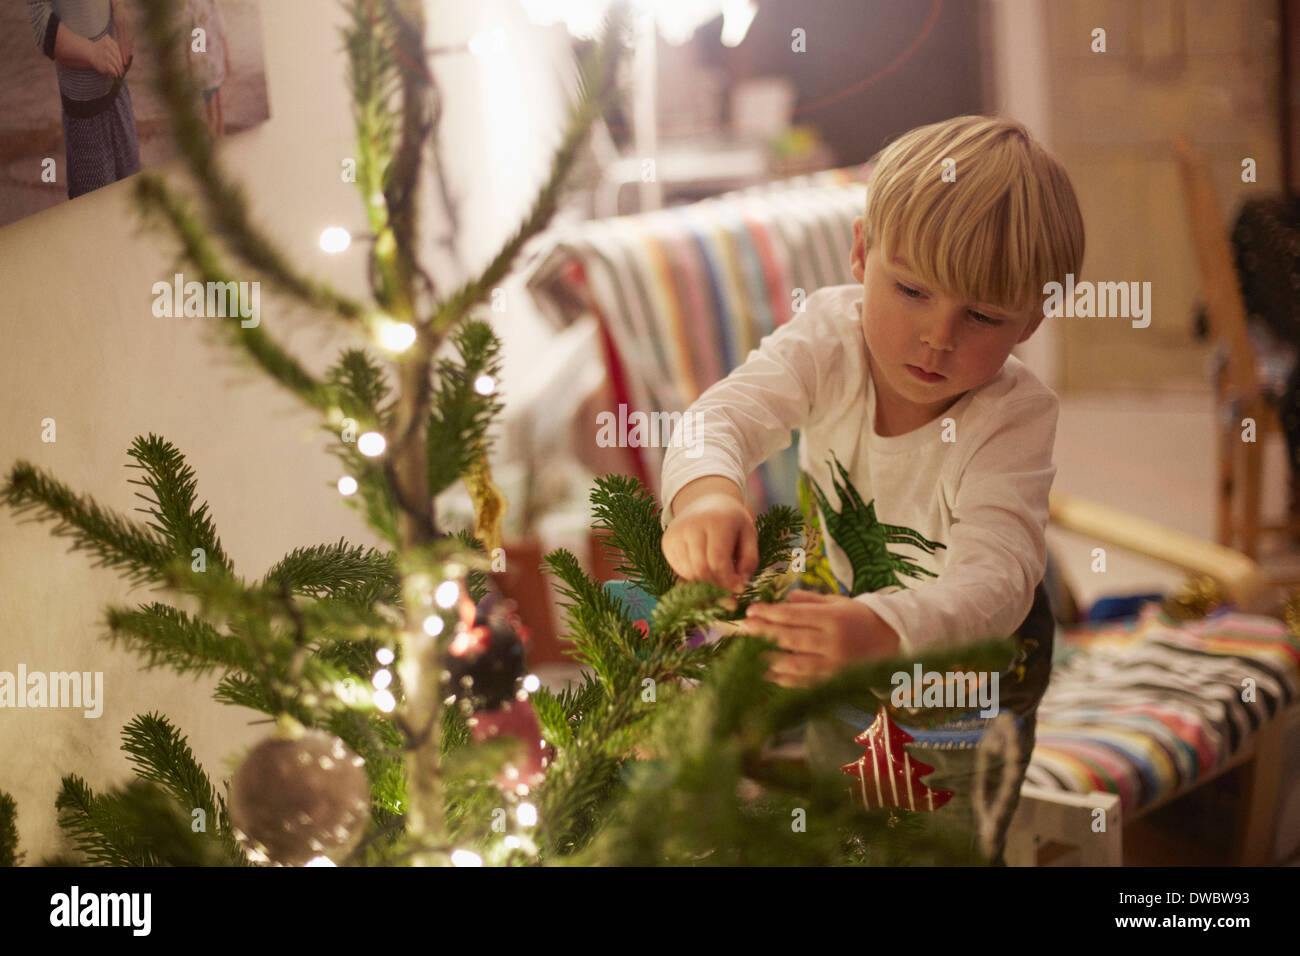 Kleiner junge Baum zu Weihnachten dekorieren Stockfoto